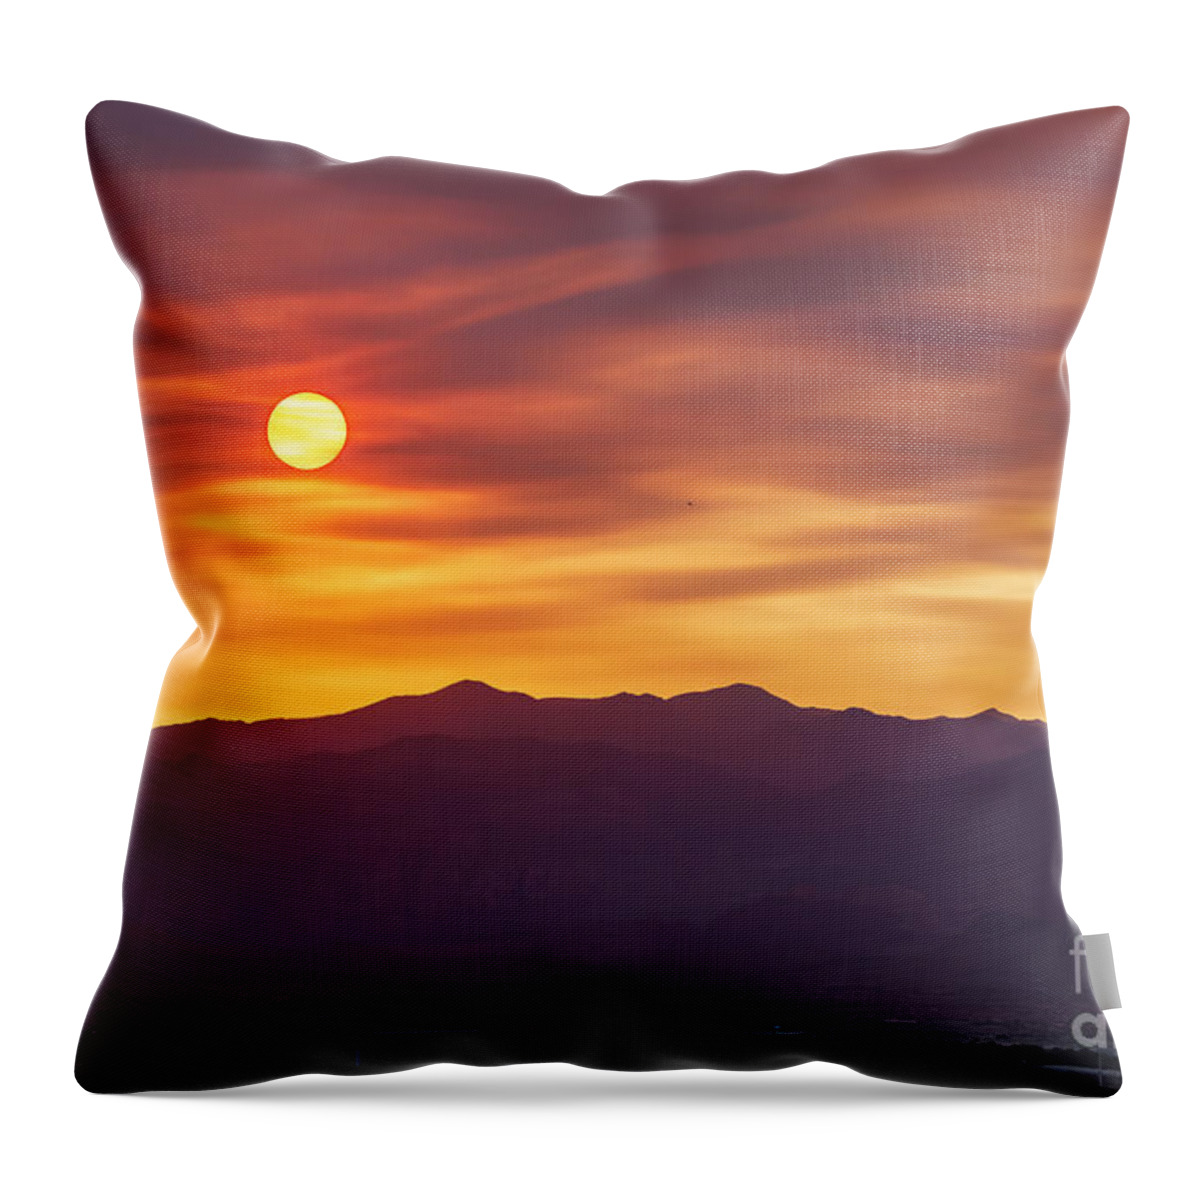 Las Vegas Sunset Throw Pillow featuring the photograph Hazy Las Vegas Sunset by Aloha Art